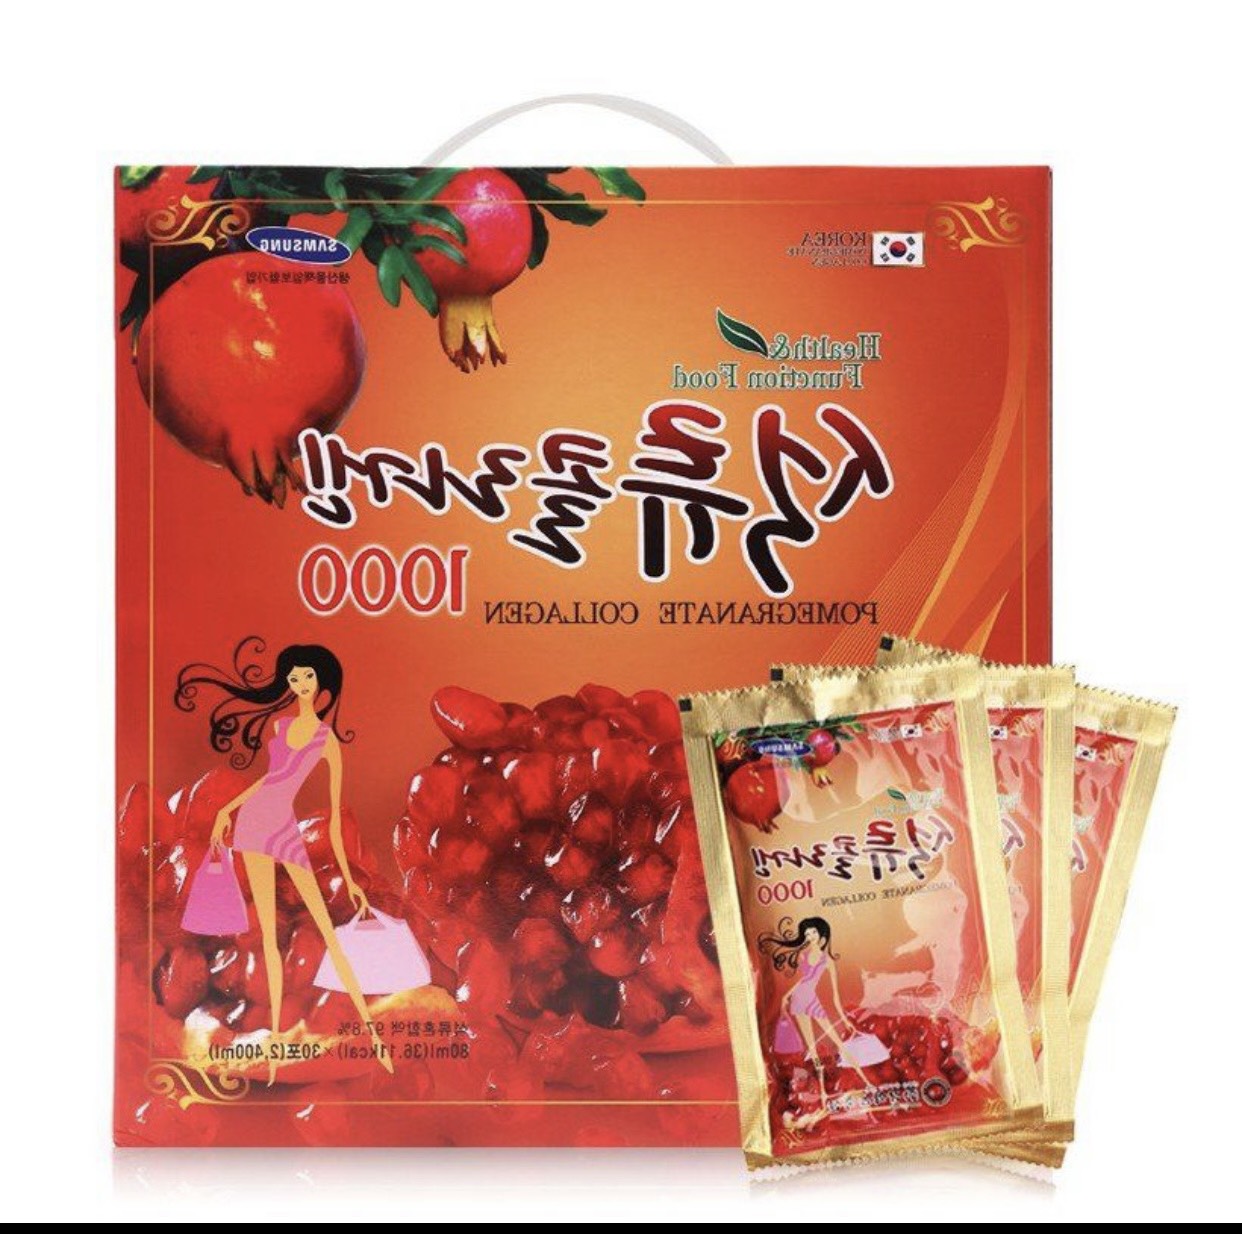 Nước Ép Lựu Đỏ KangHwa Hàn Quốc Pomegranate Collagen 1000 Nguyên Chất 80Ml* 30 gói